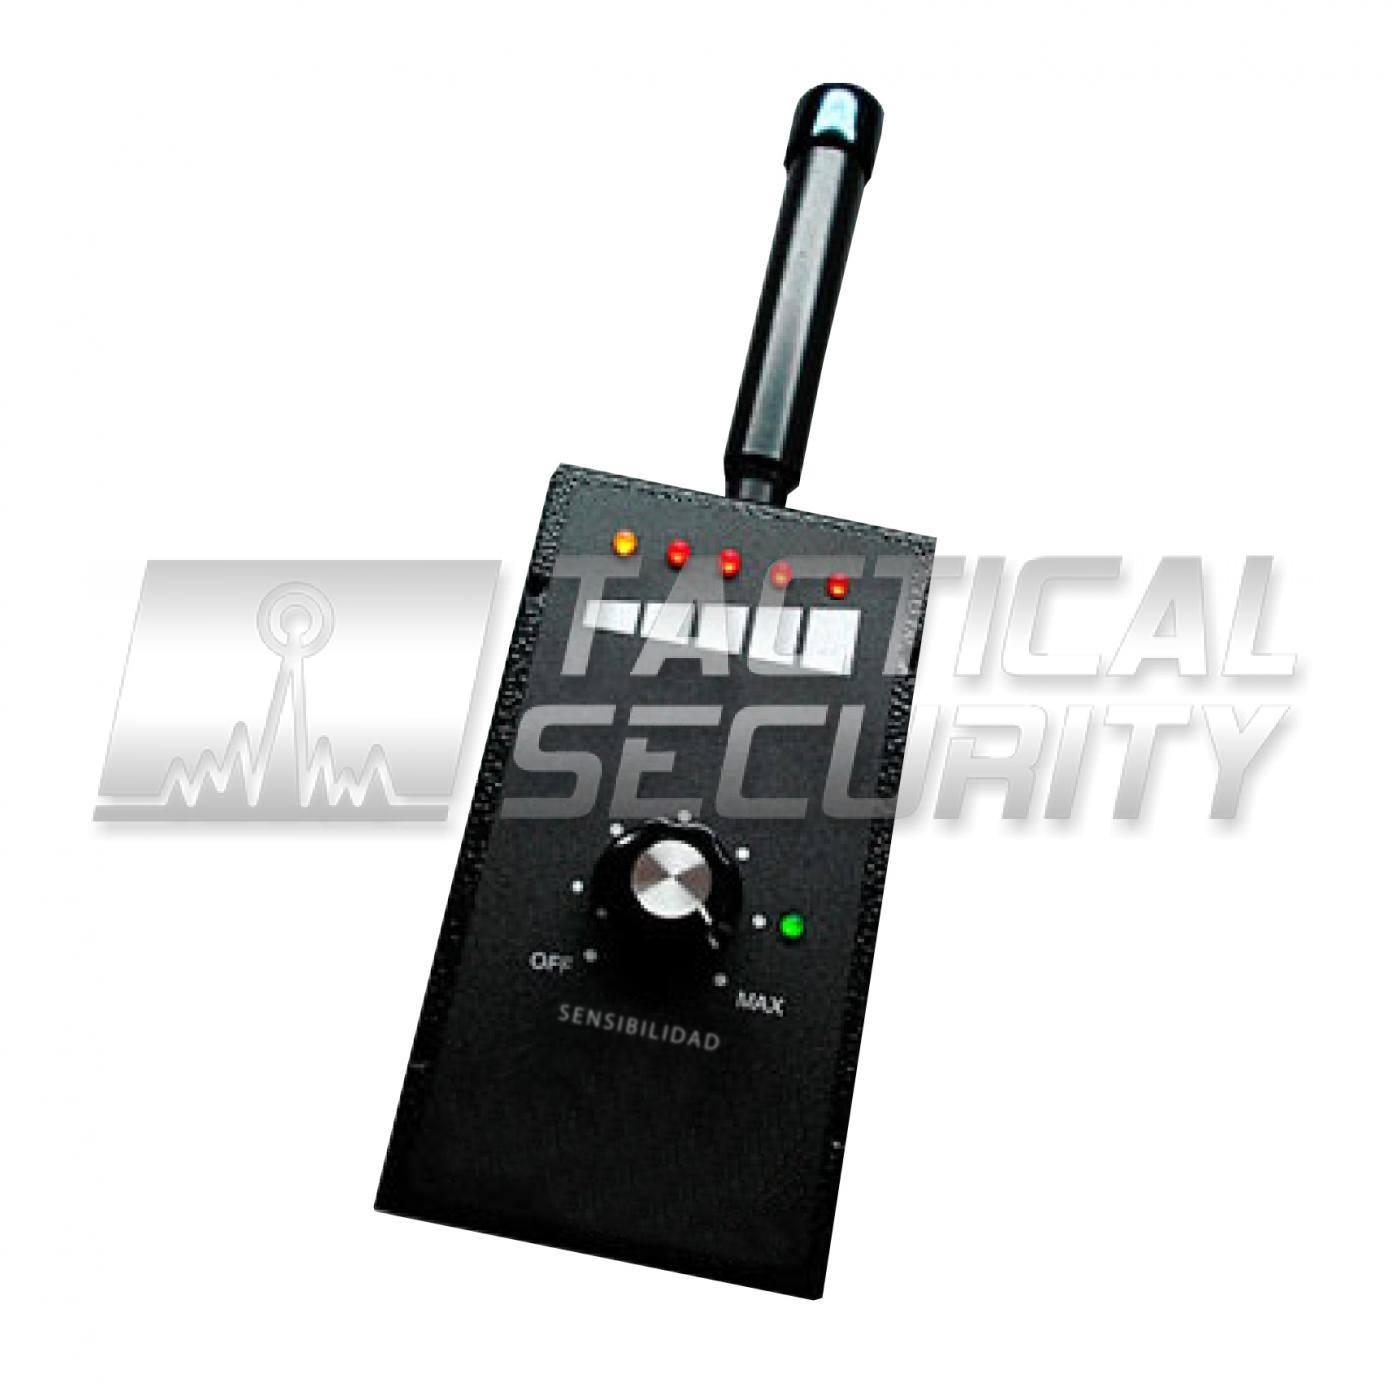 Rfsignal - Detector de micrófonos ocultos y telecámaras con cableado  inalámbrico